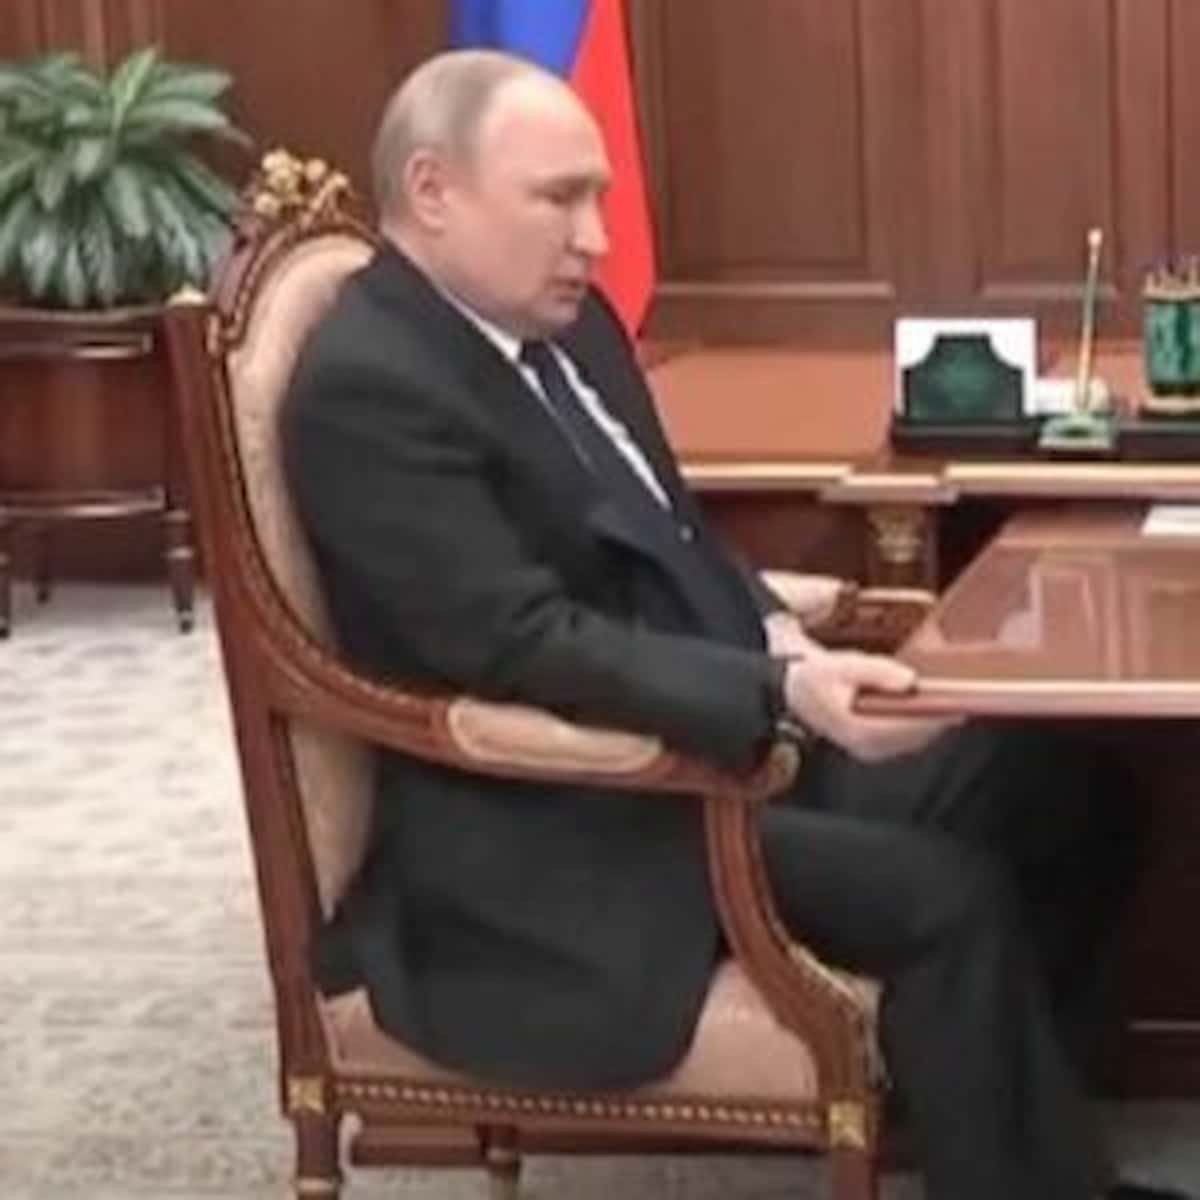 Putin malato (forse: guardate come si aggrappa al tavolo) ma non fesso: se l'Ovest cede, sarà come con Hitler.